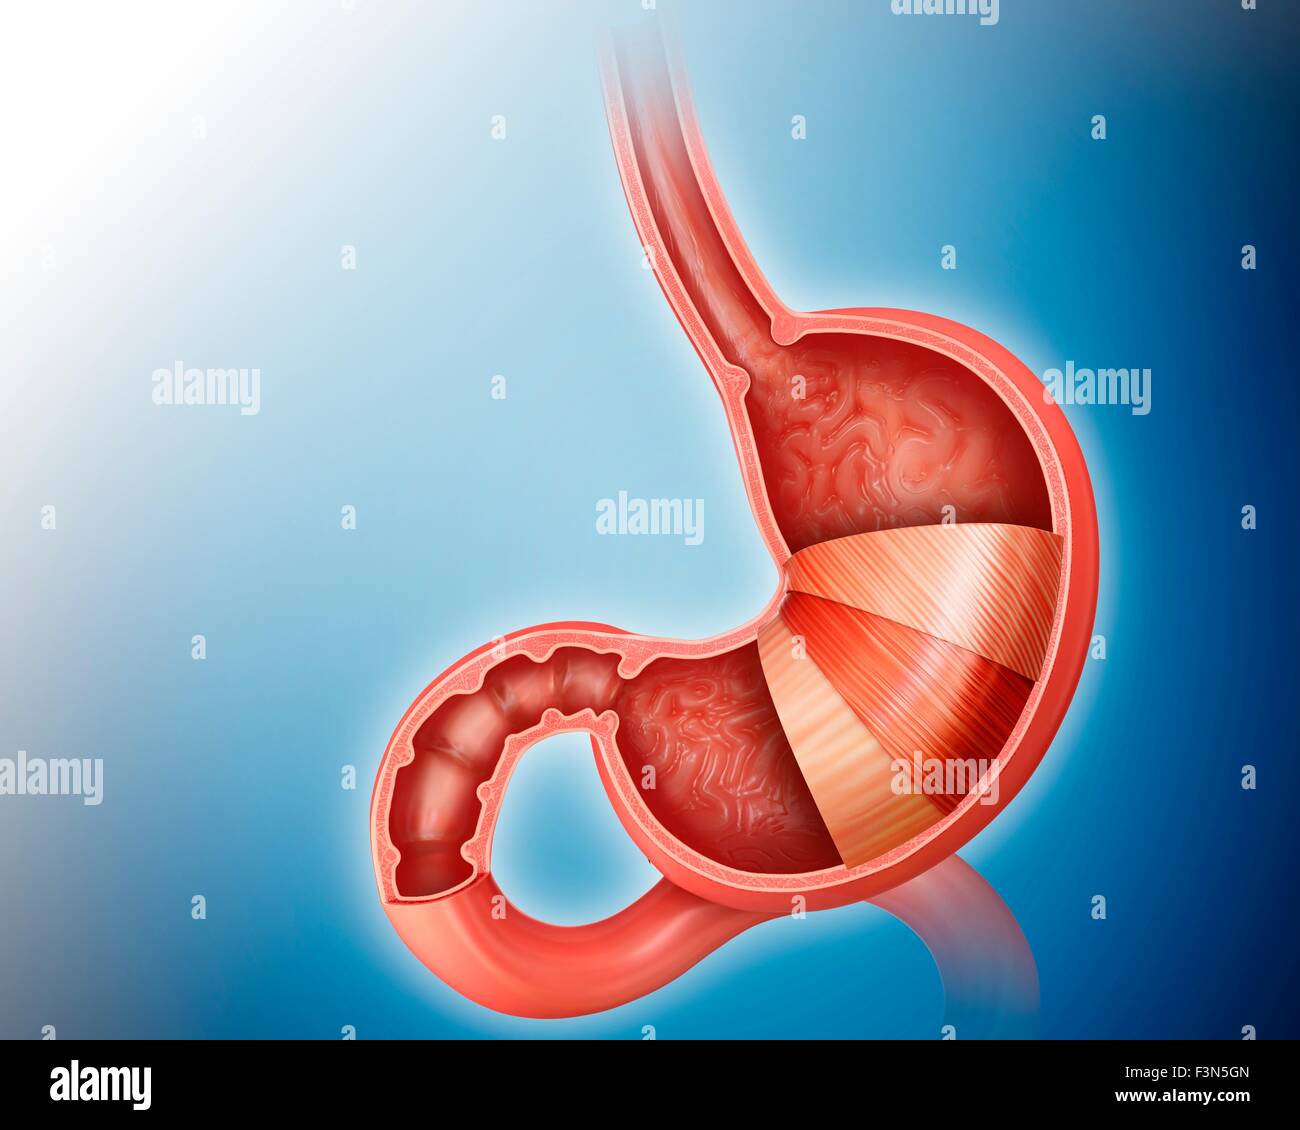 Les couches de l'estomac et l'intestin grêle Banque D'Images